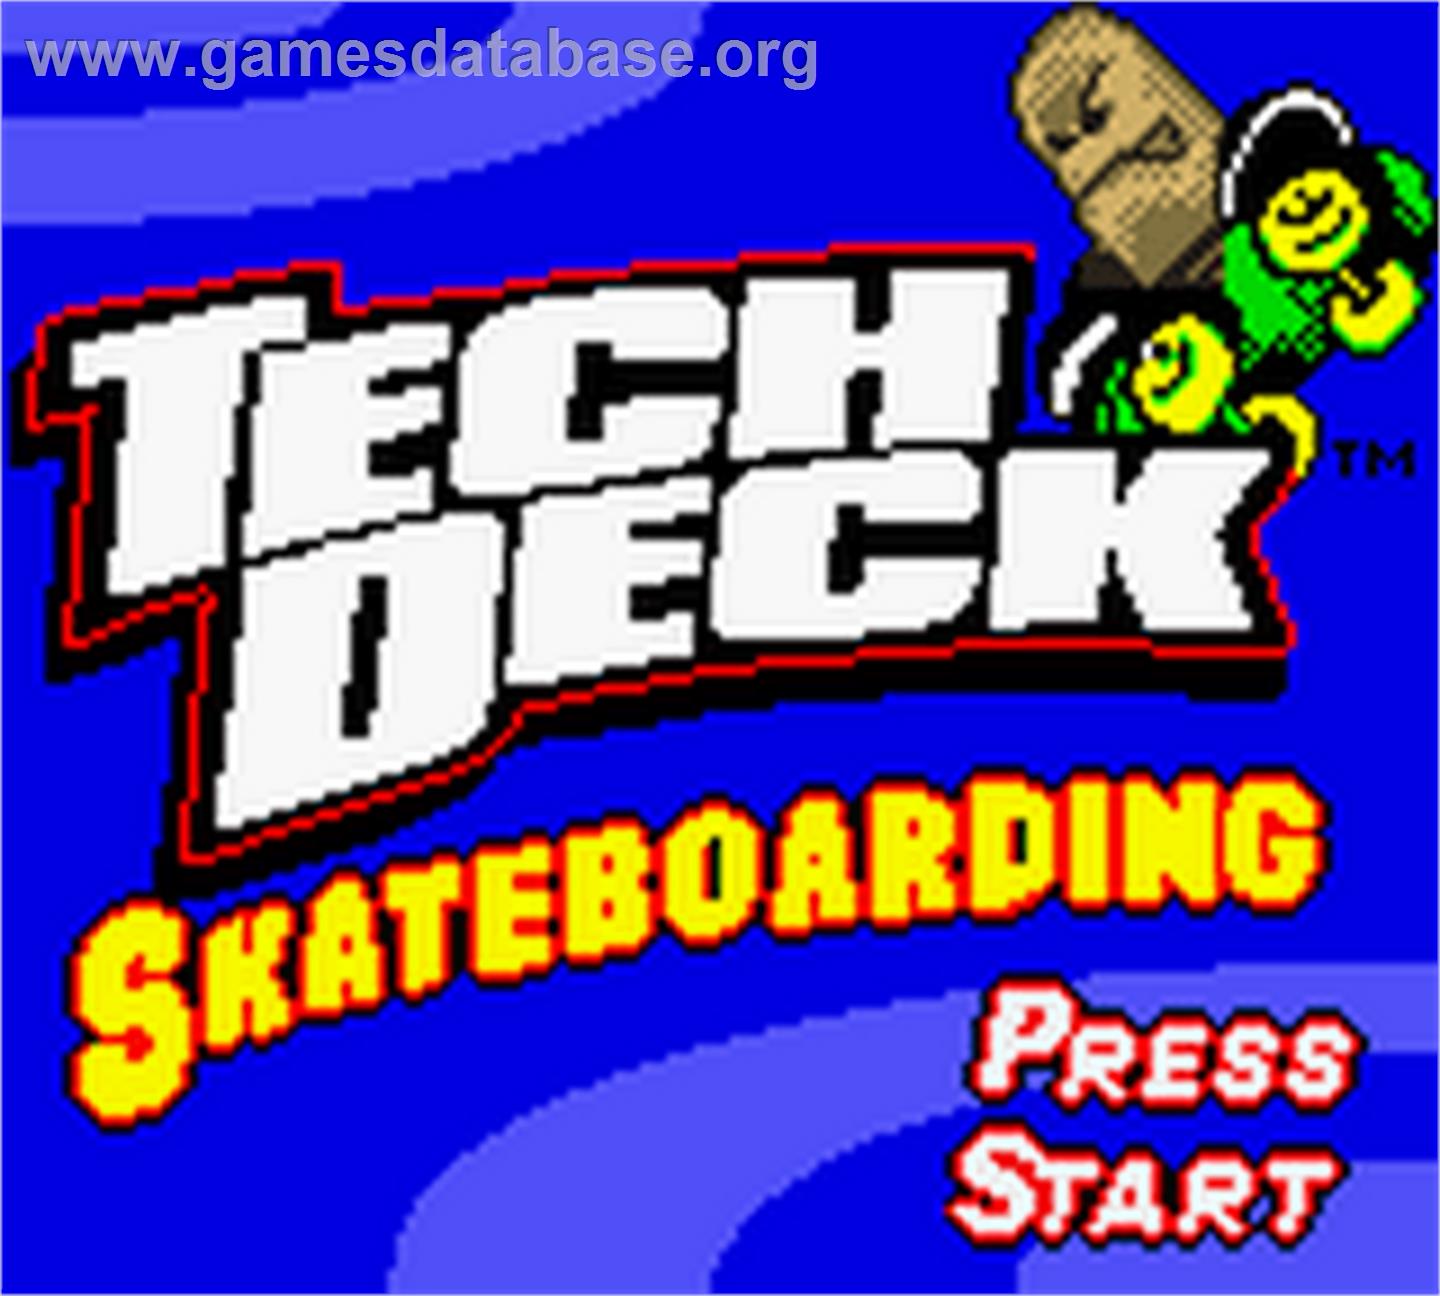 Tech Deck Skateboarding - Nintendo Game Boy Color - Artwork - Title Screen